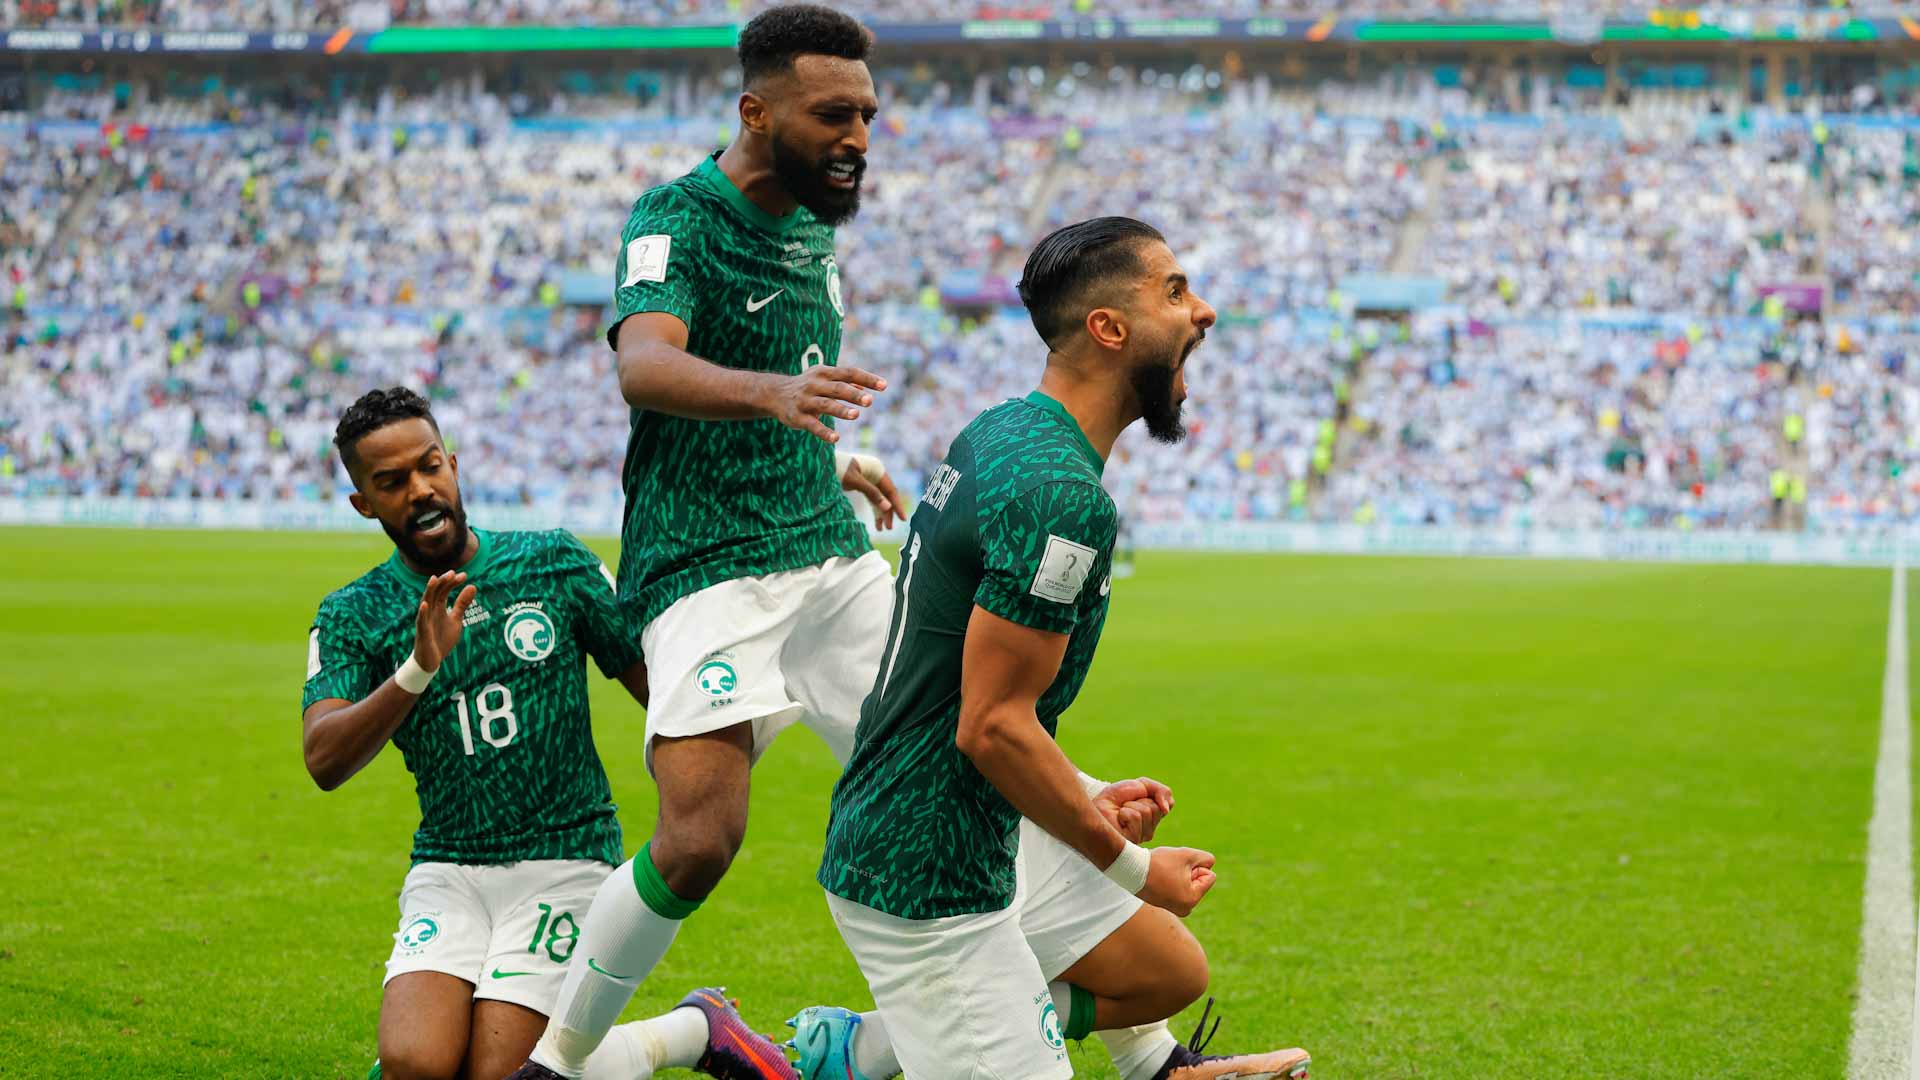 السعودية تحقق فوزا تاريخيا على الأرجنتين في كأس العالم قطر 2022